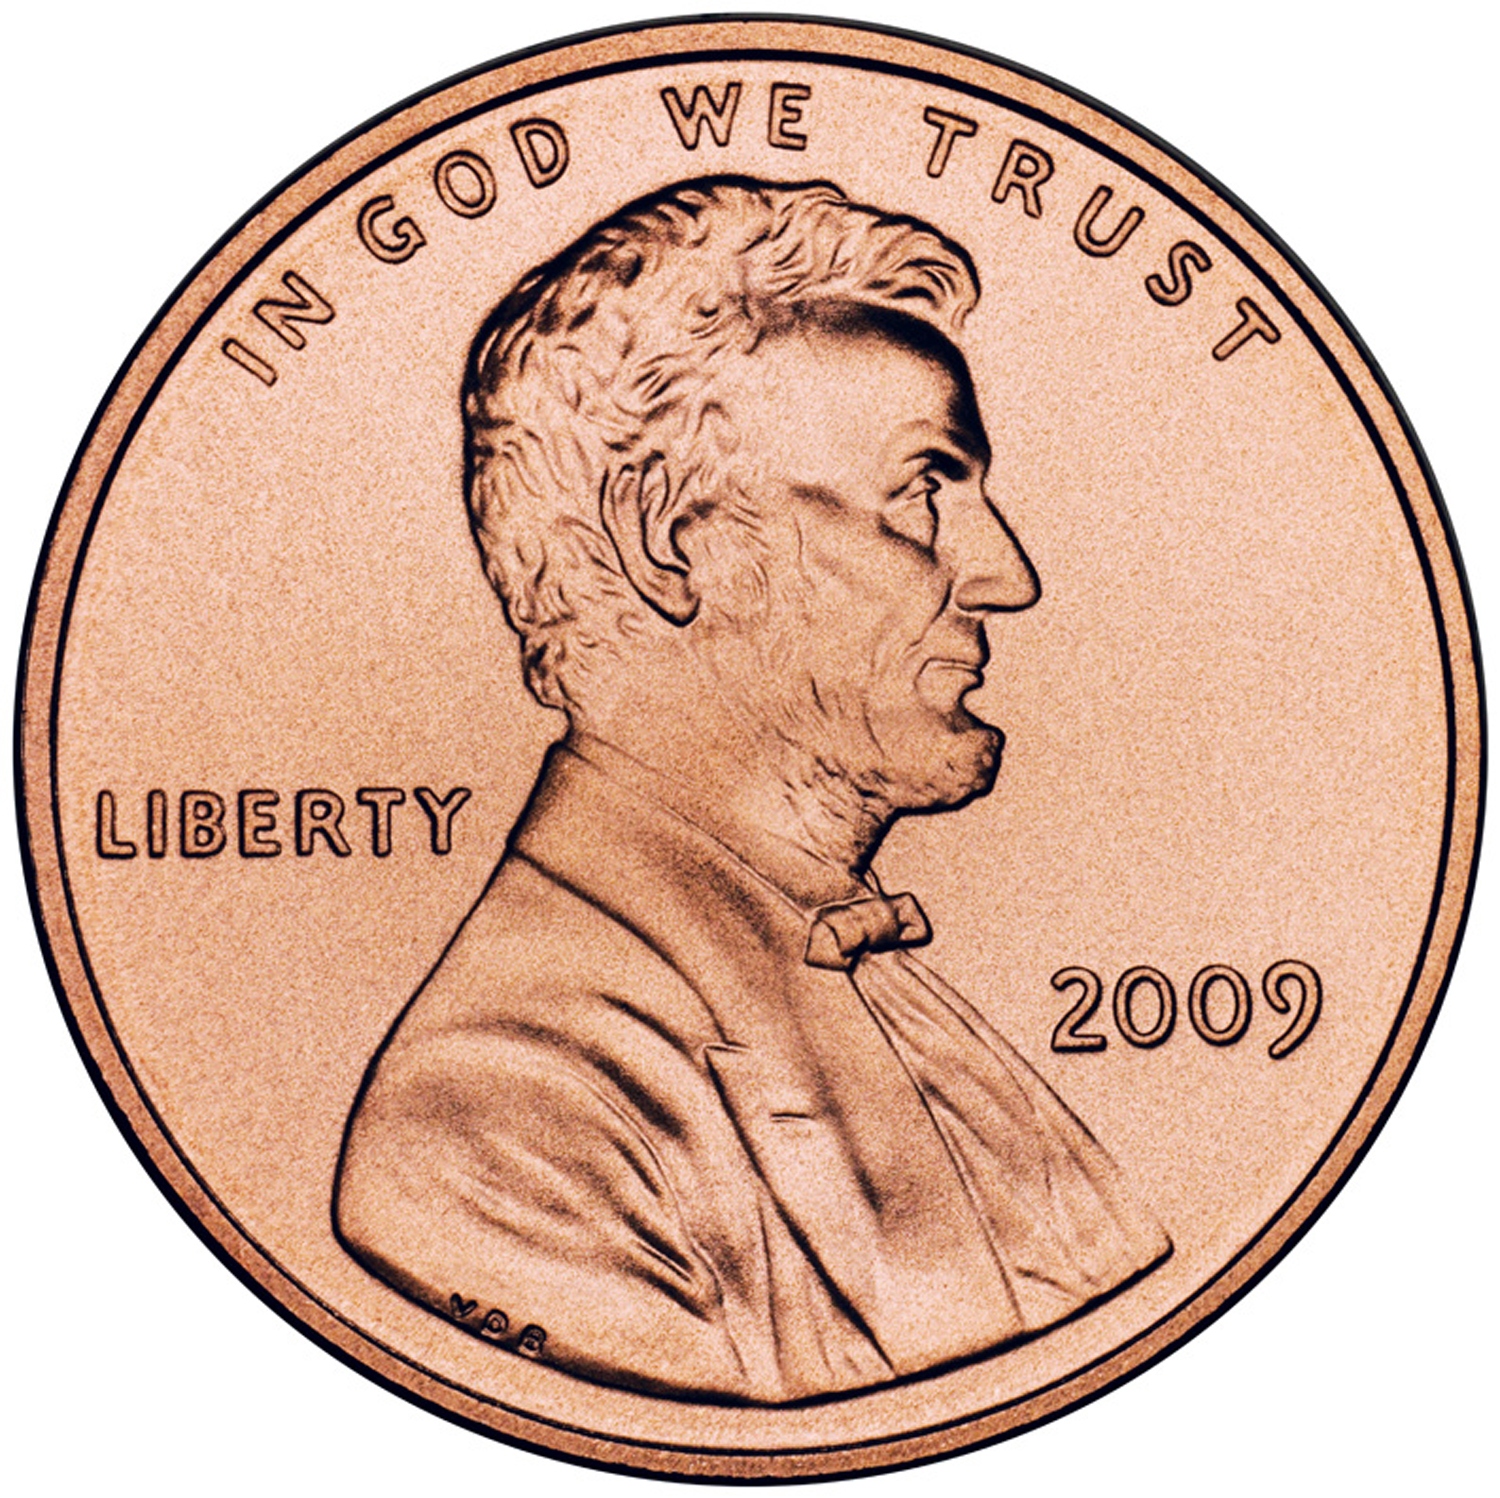 . . . sju stycken sådana här amerikanska mynt - det vill säga, sju cent. 
Längst upp på myntet står det: "I gud har vi vår tillit", och på den vänstra sidan: "Frihet".